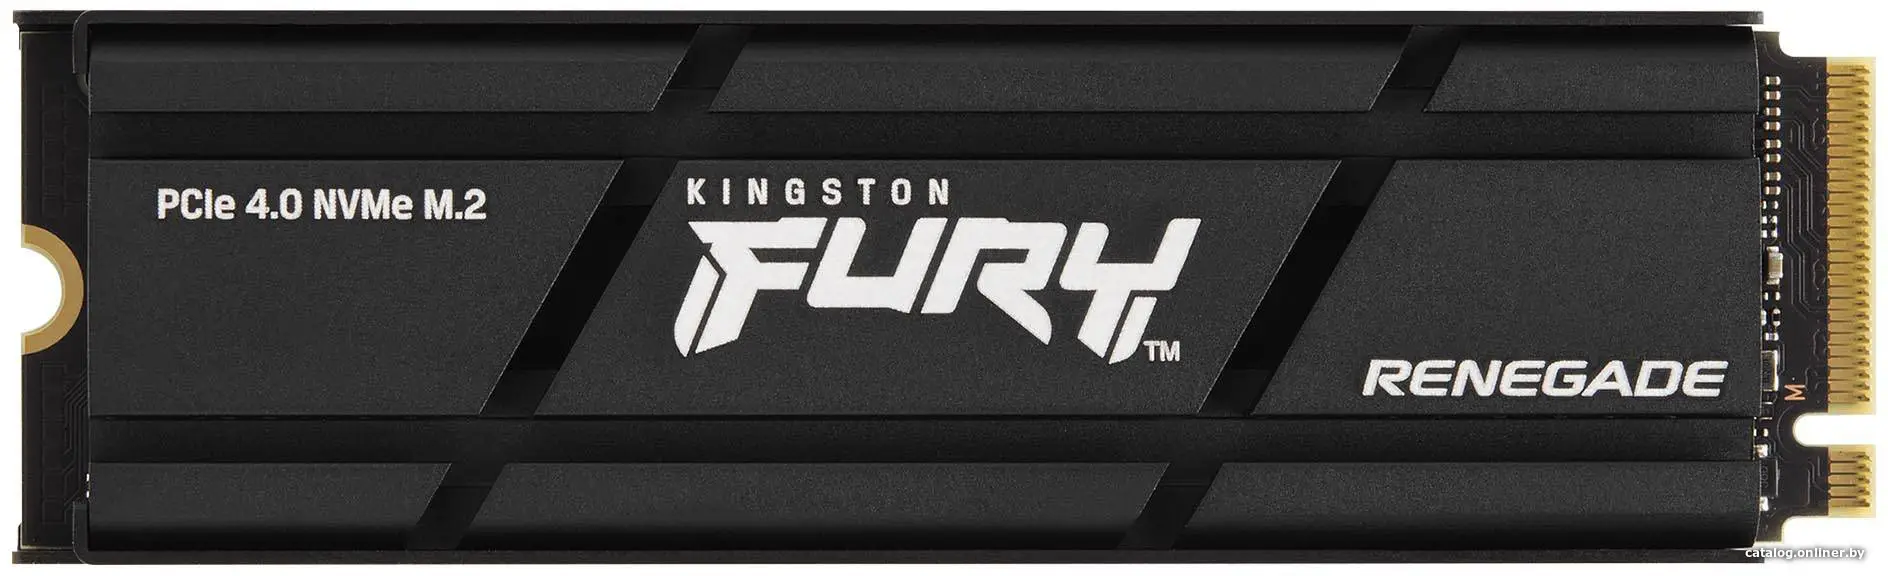 Купить SSD диск Kingston Read/Write (SFYRSK/1000G), цена, опт и розница